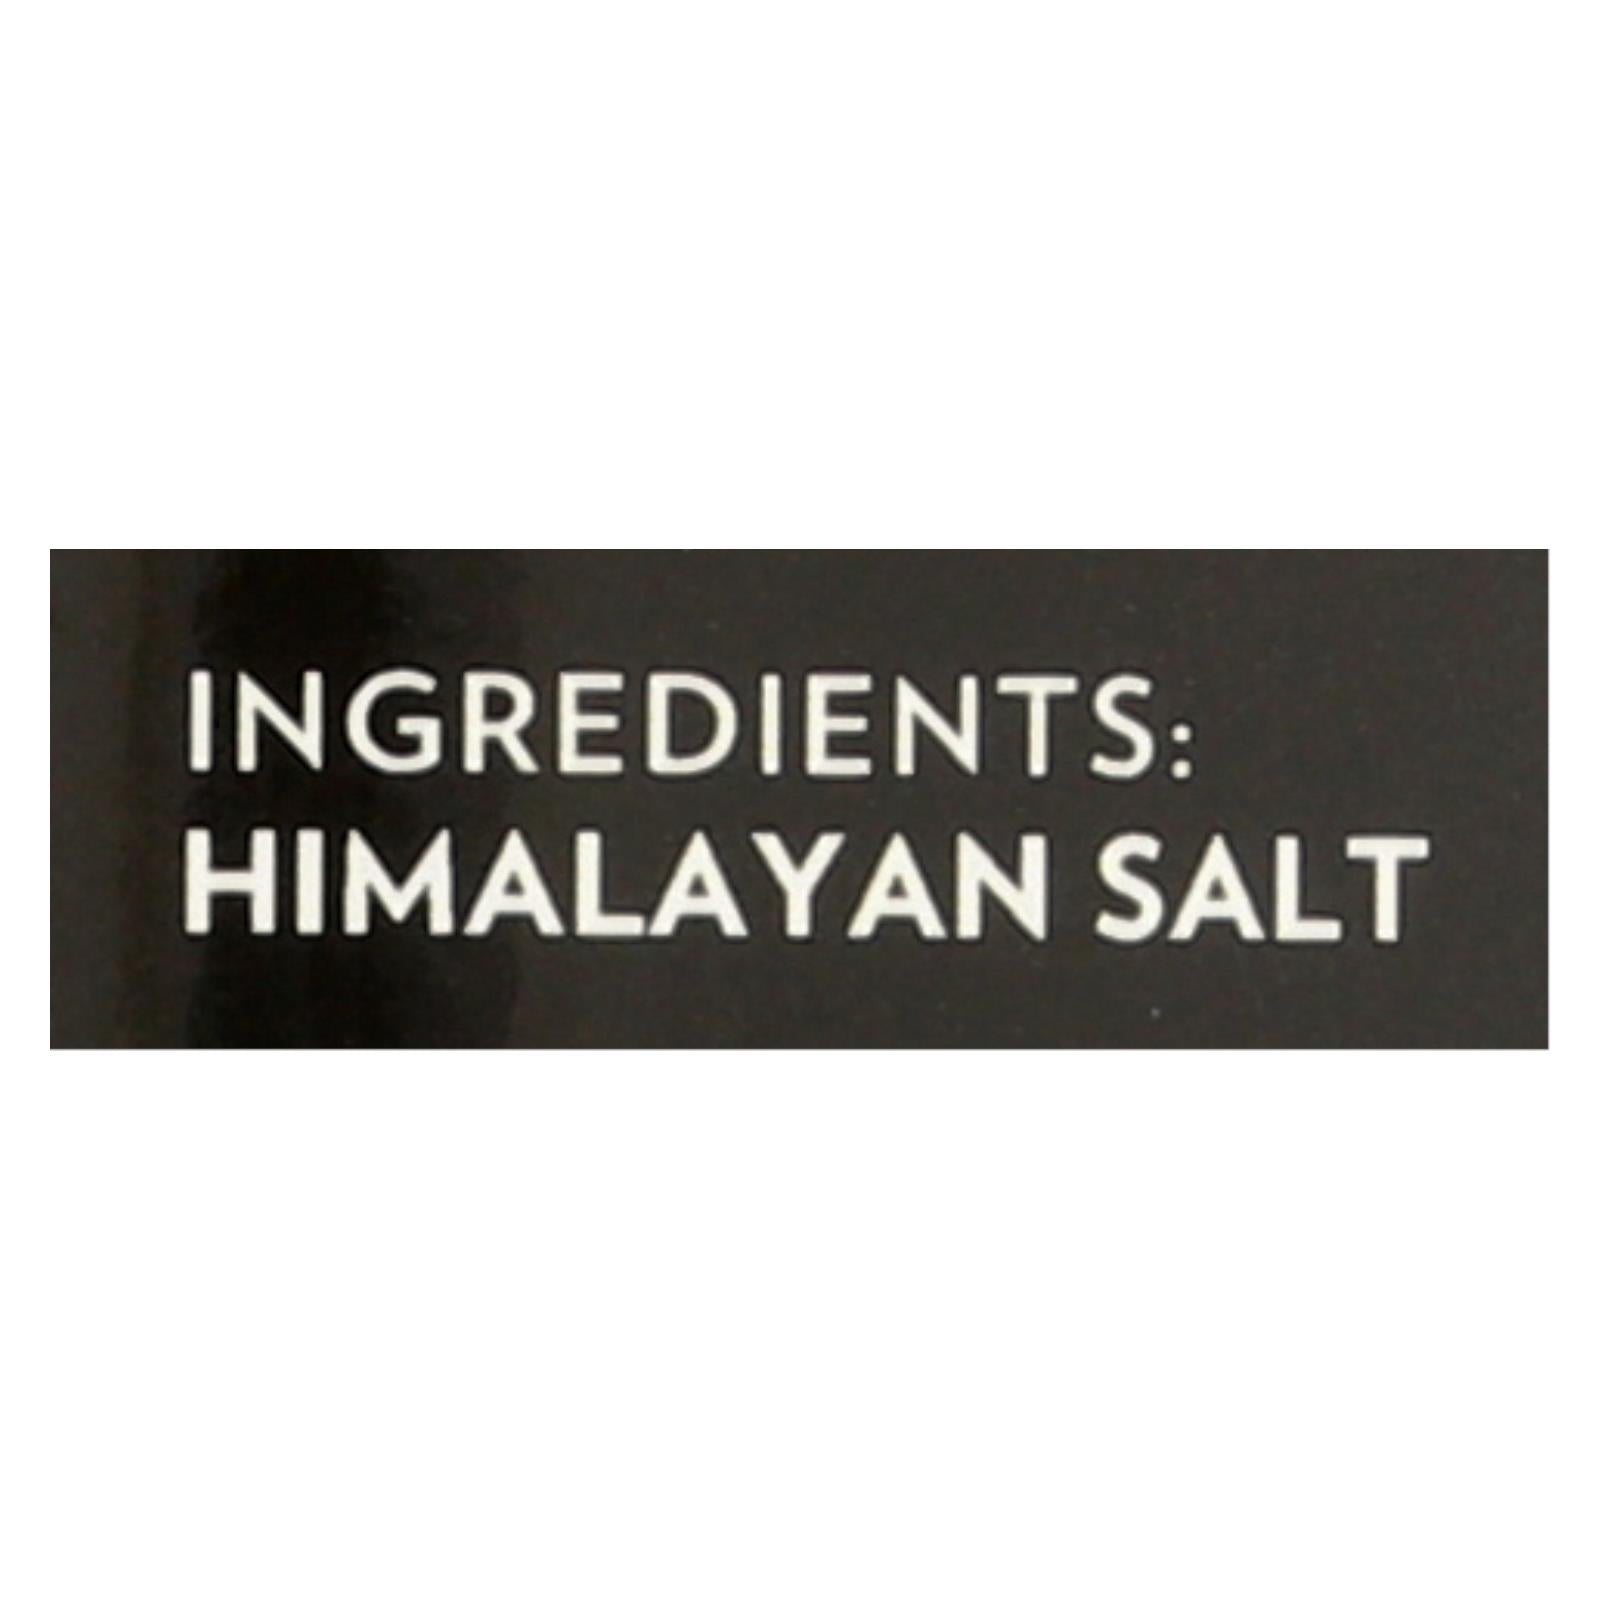 Evolution Salt Bath Salt - Himalayan - Fine - 26 Oz